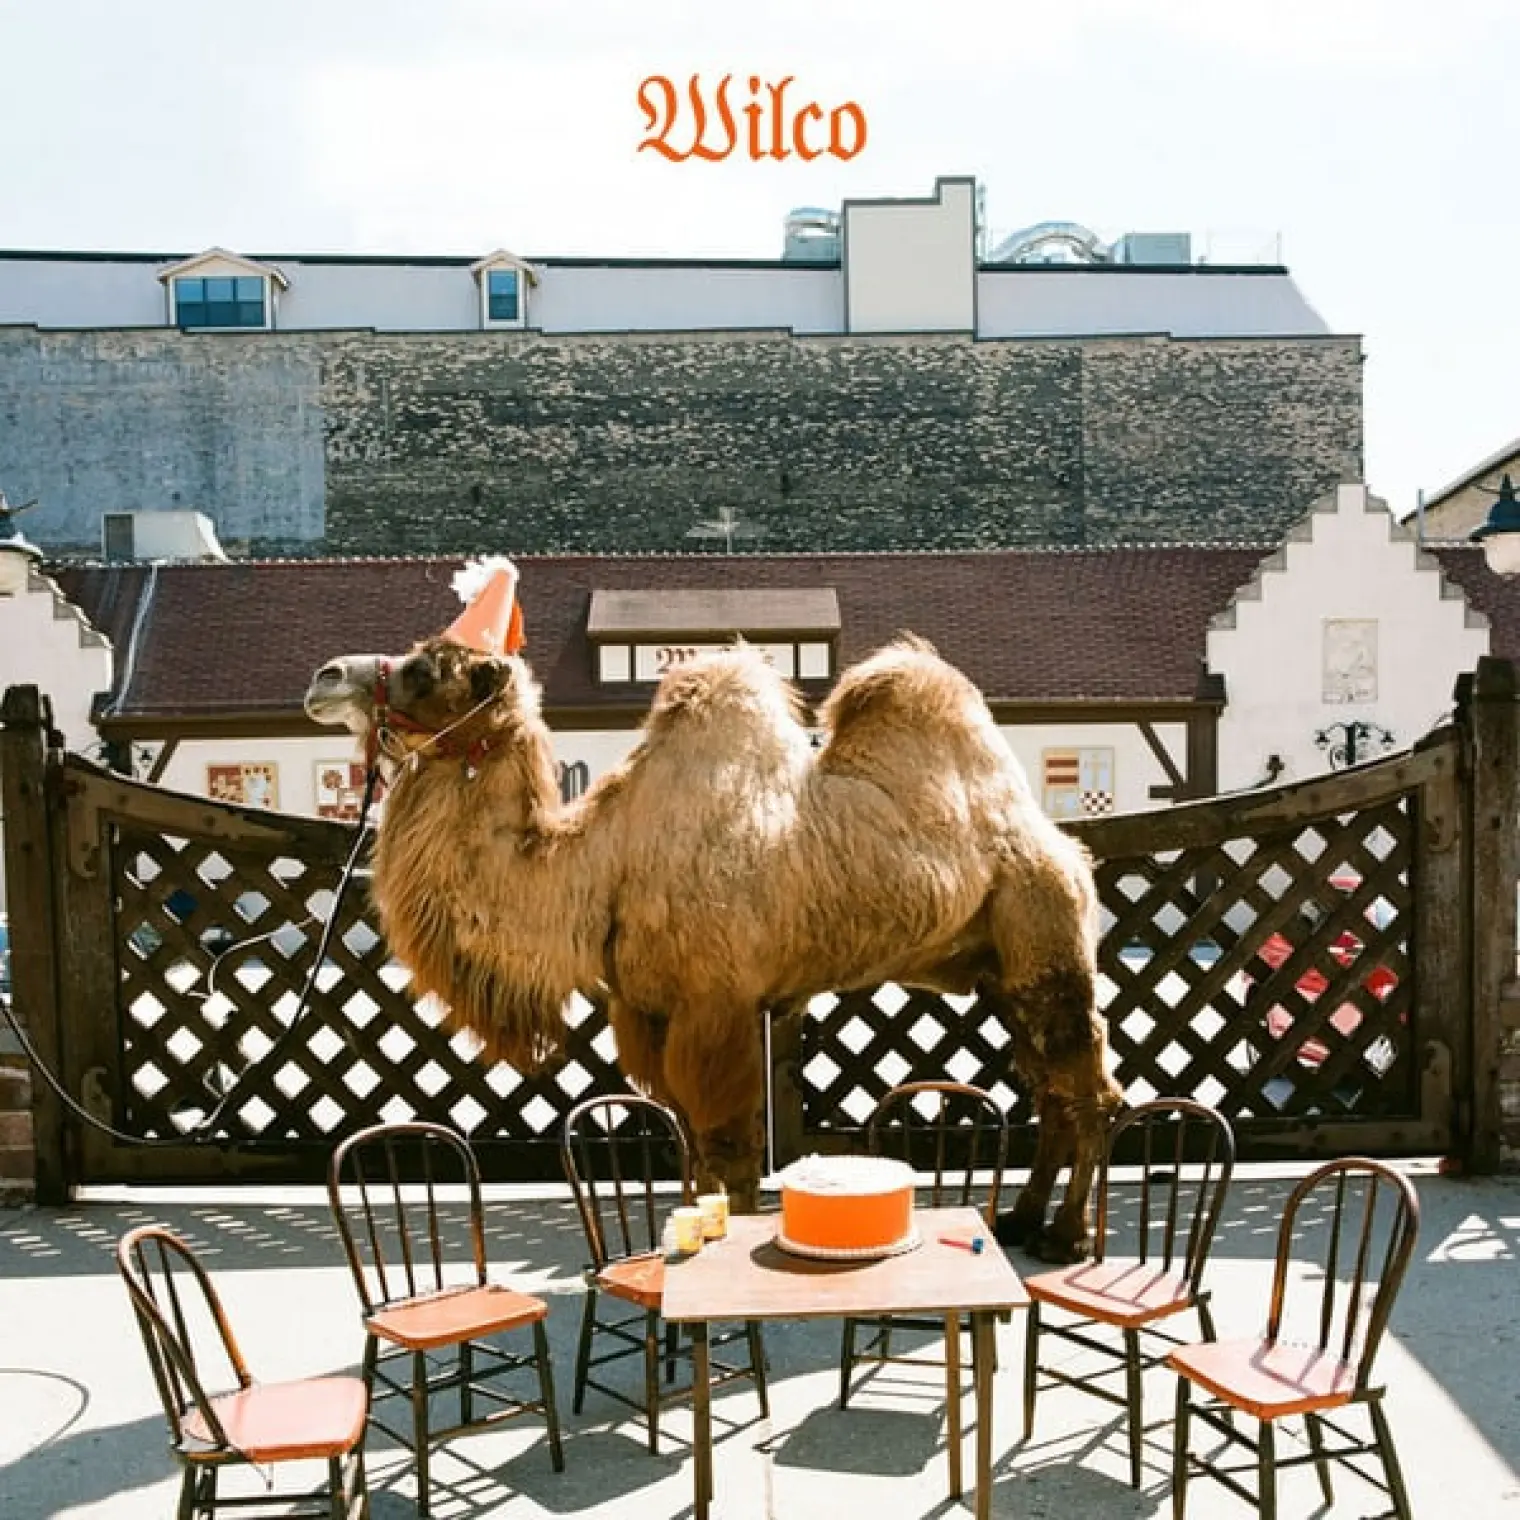 Wilco (the album) -  Wilco 